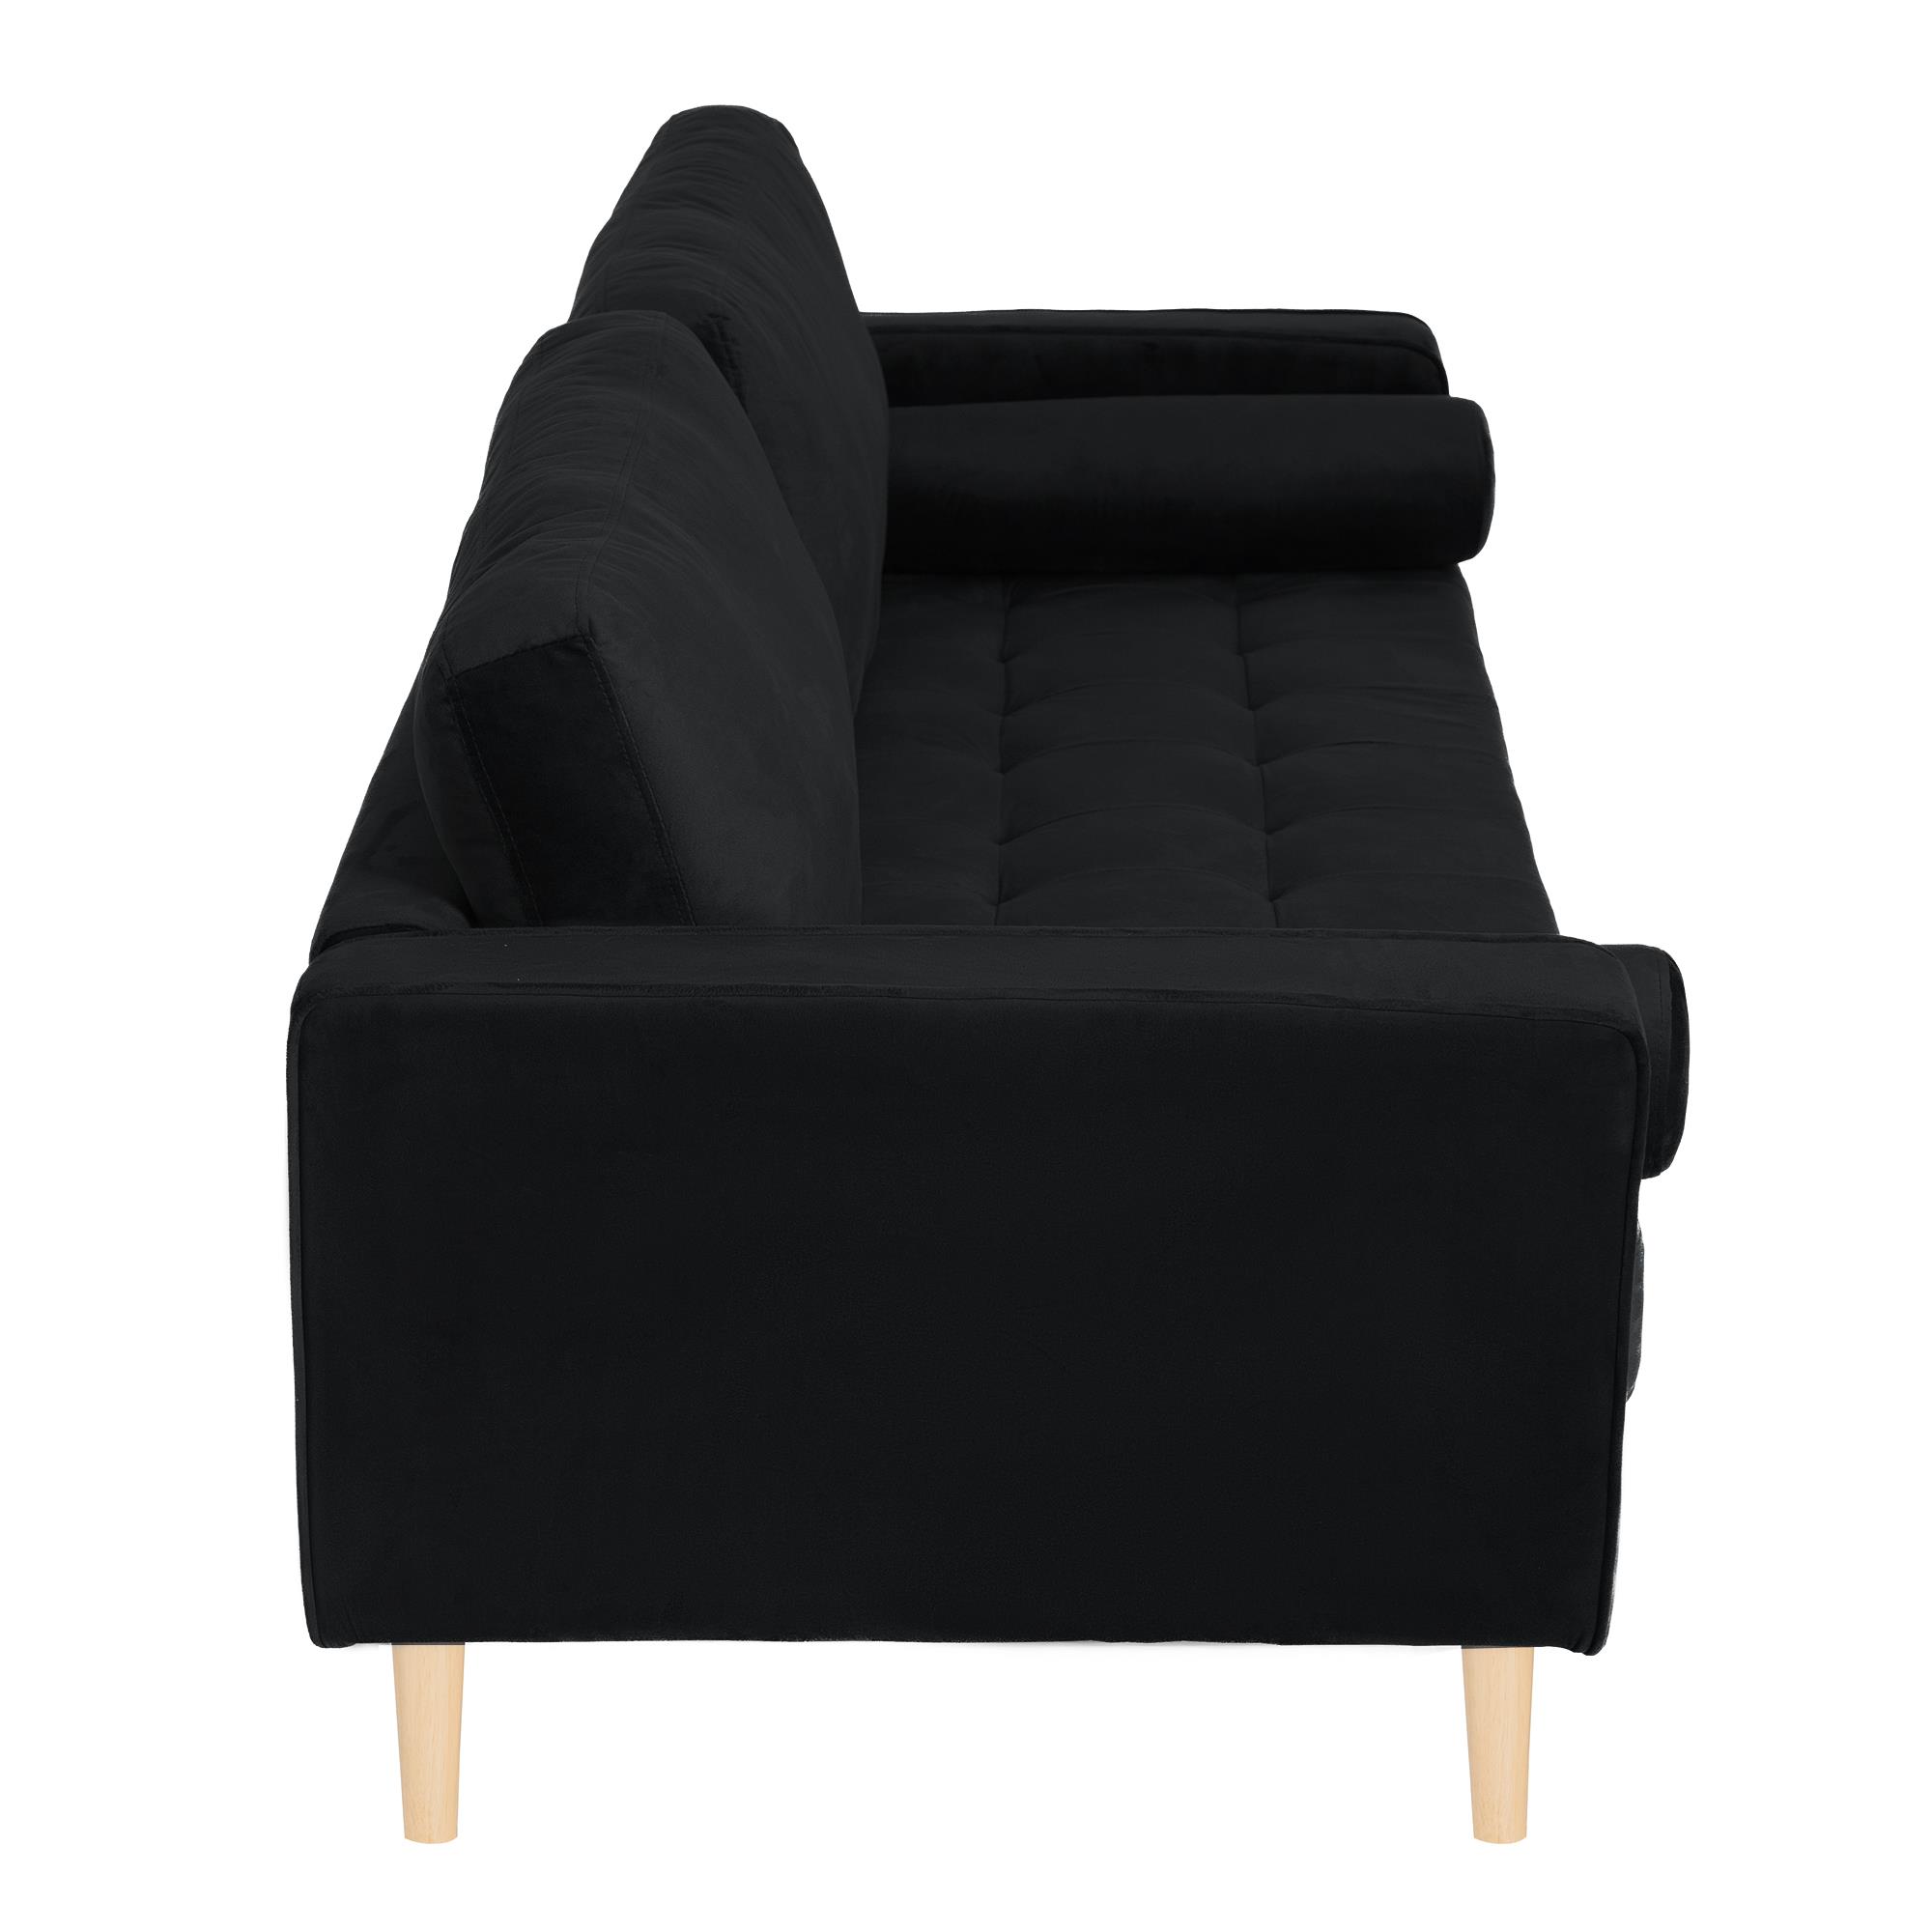 ספה תלת מושבית דגם סונטה צבע שחור